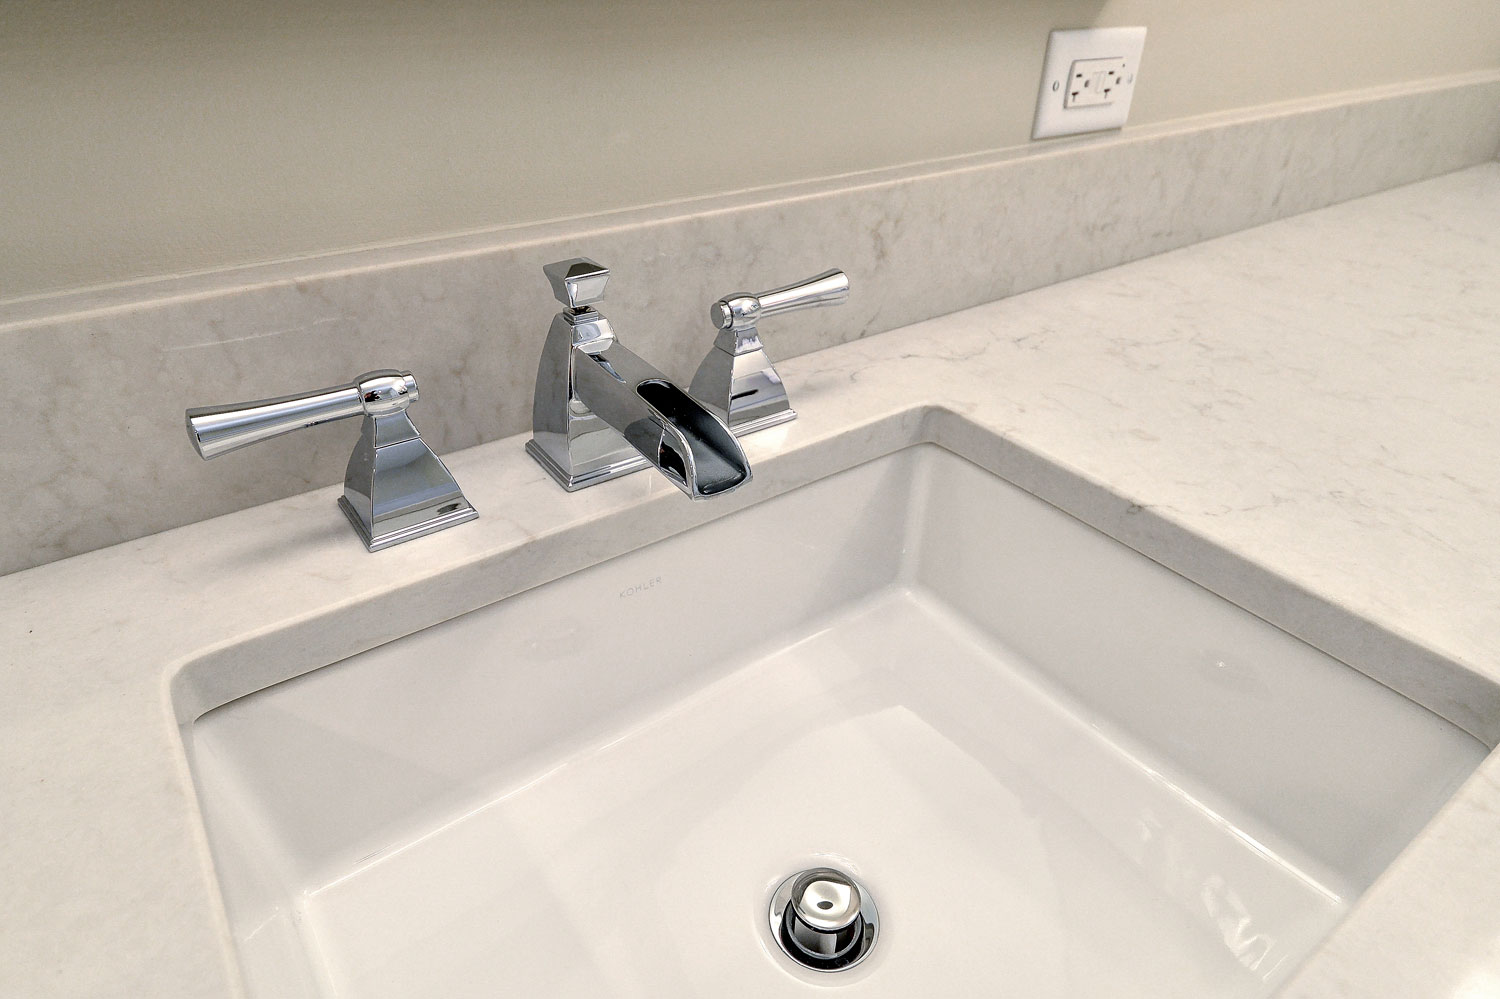 Hinsdale Master Bathroom Remodeling Project - Sebring Design Build